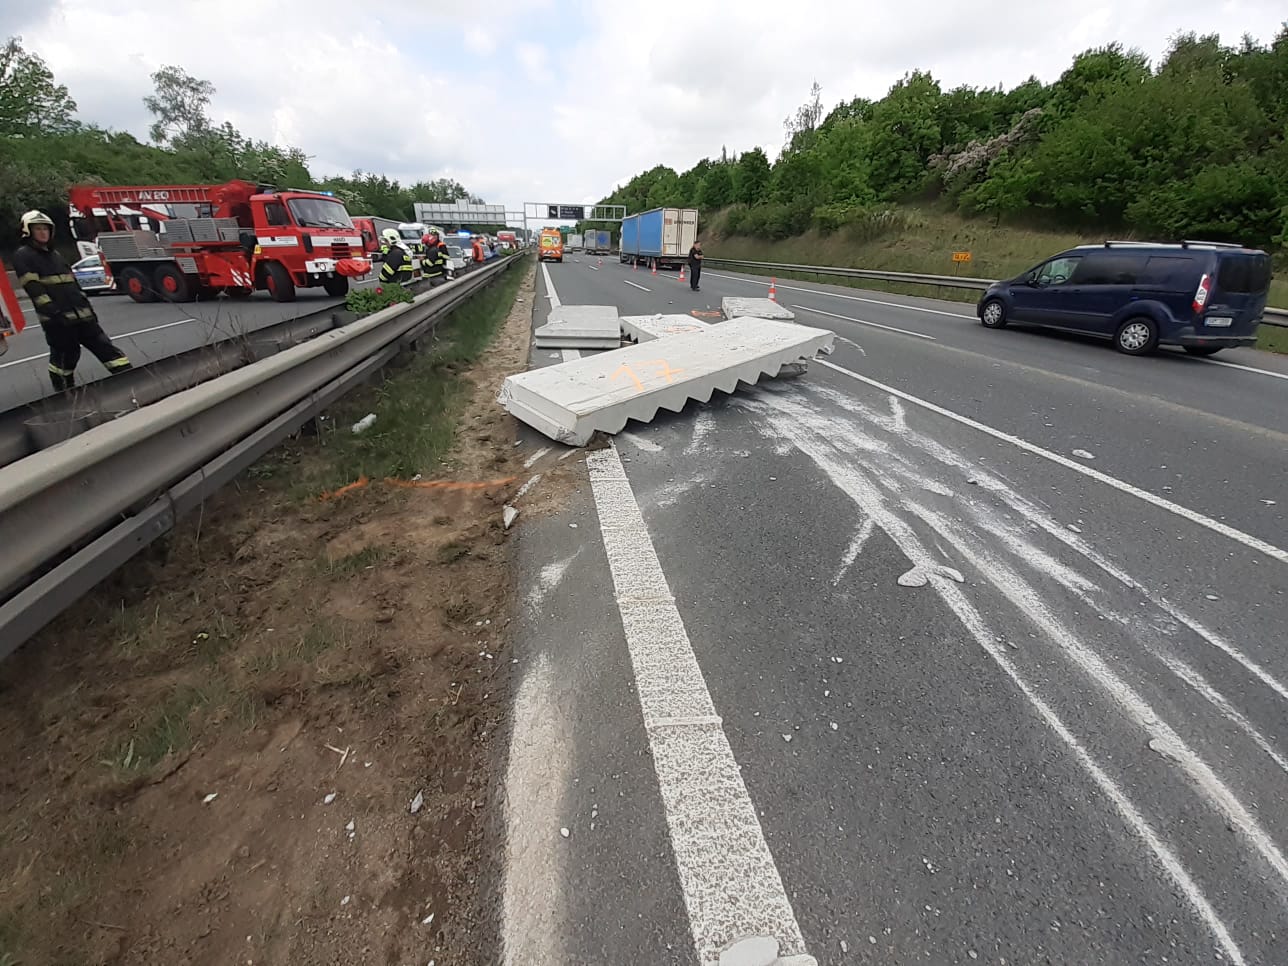 009 - Tragická dopravní nehoda na brněnské dálnici.jpeg